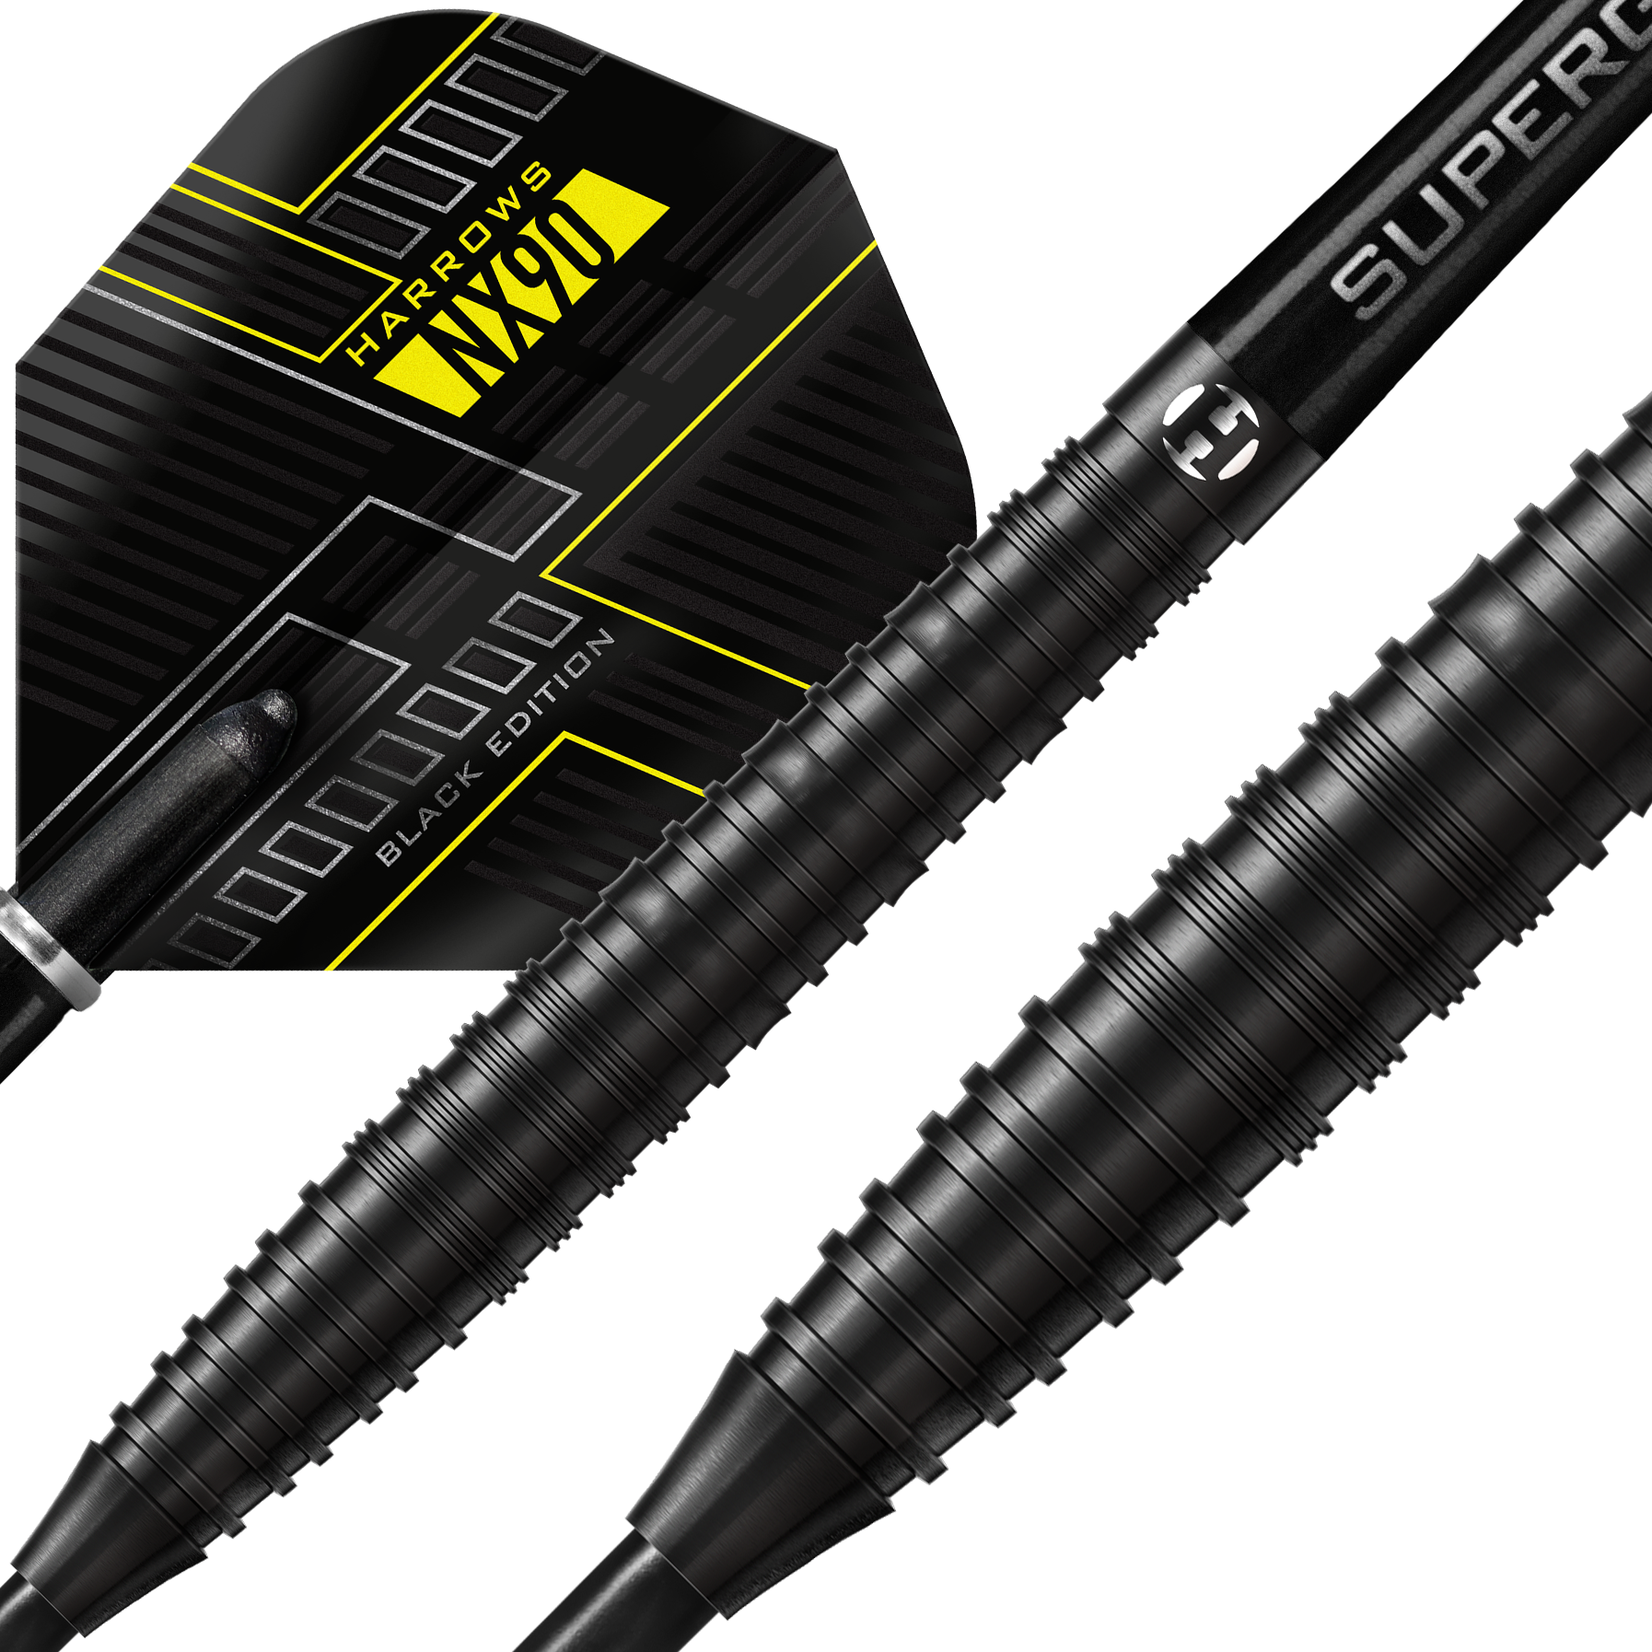 Harrows Darts Harrows NX90 Black Edition 90% Steel Tip Darts